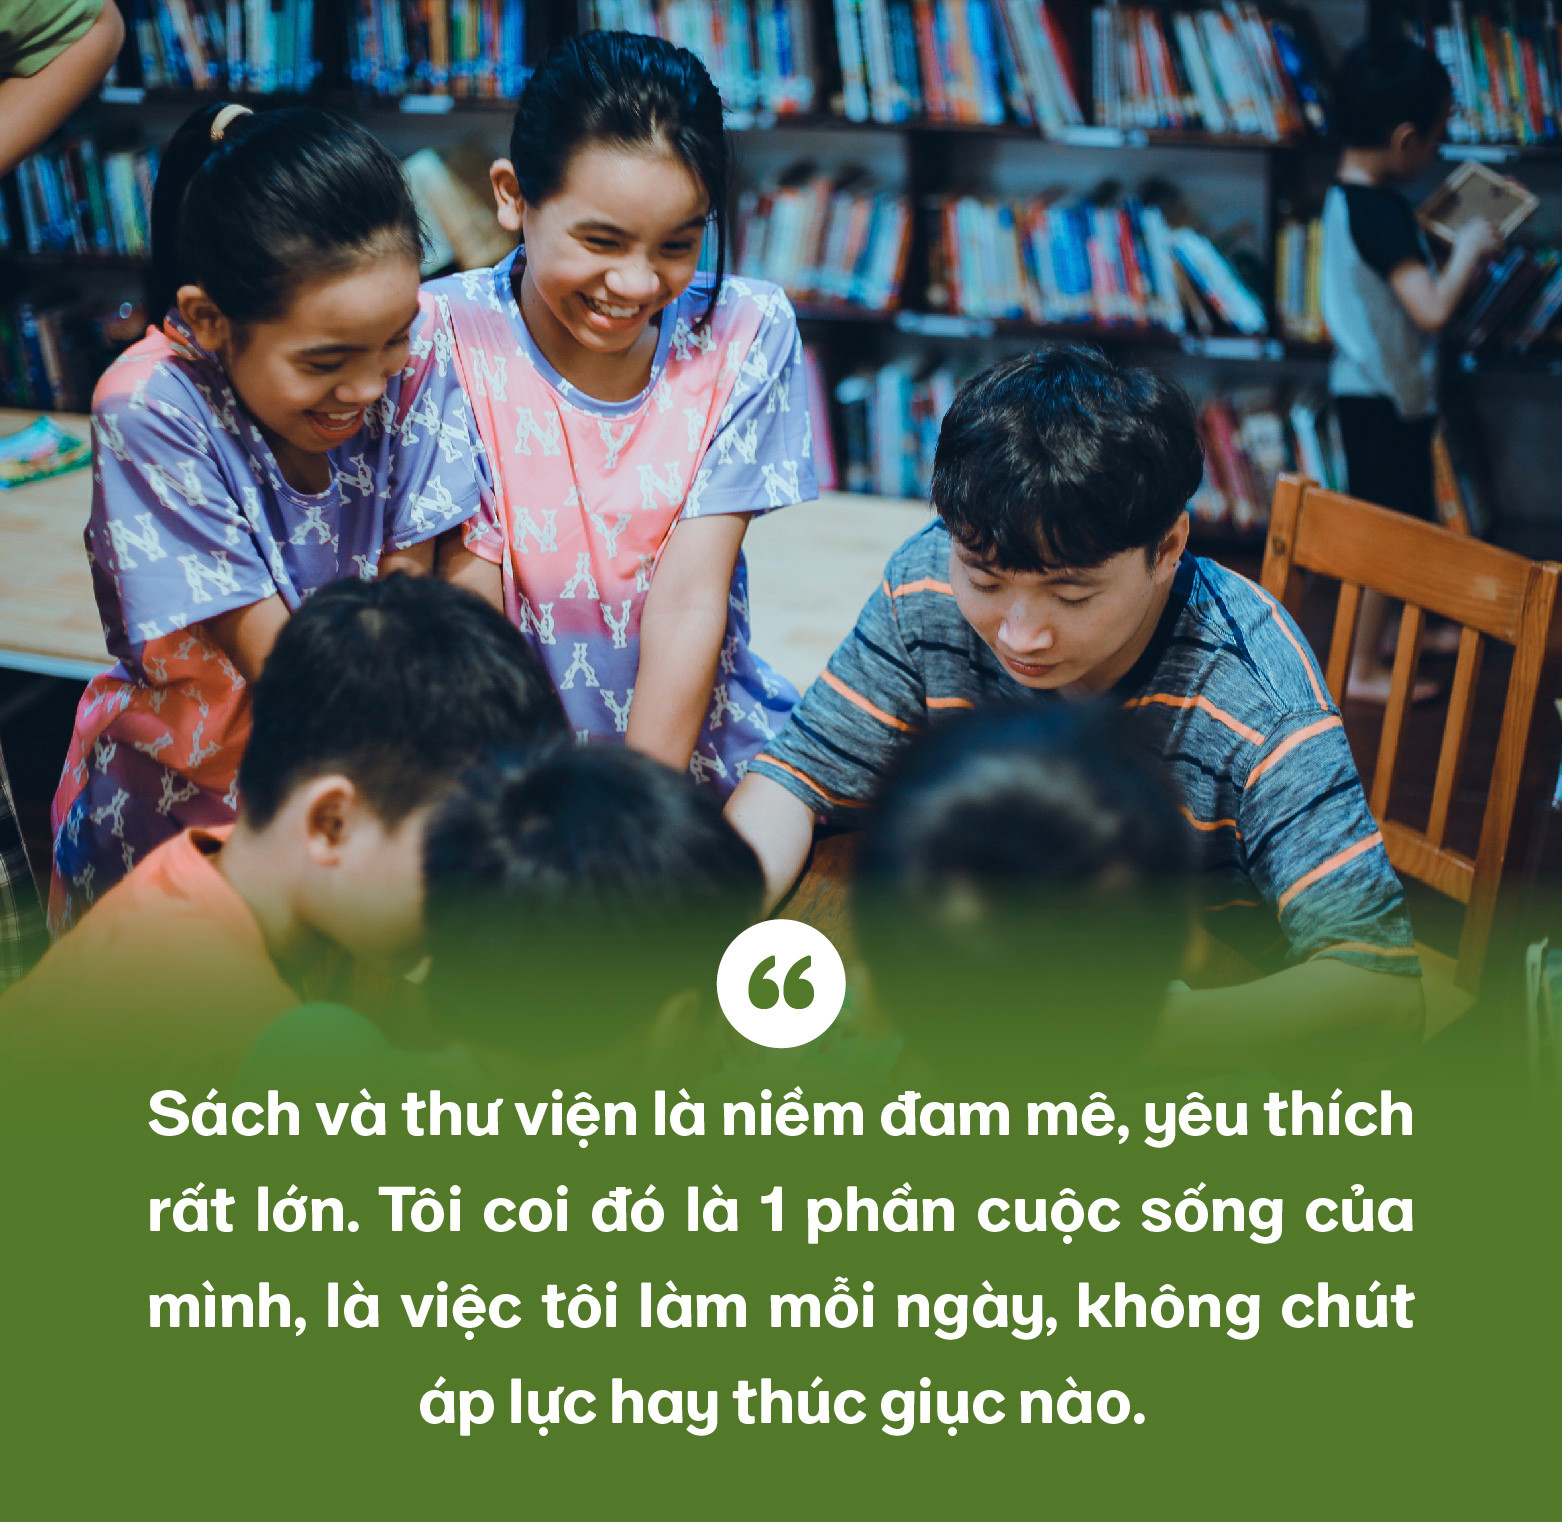 9x với giấc mơ tạo ra những điều kỳ diệu với sách, lan tỏa văn hóa hóa đọc khắp Việt Nam - Ảnh 6.